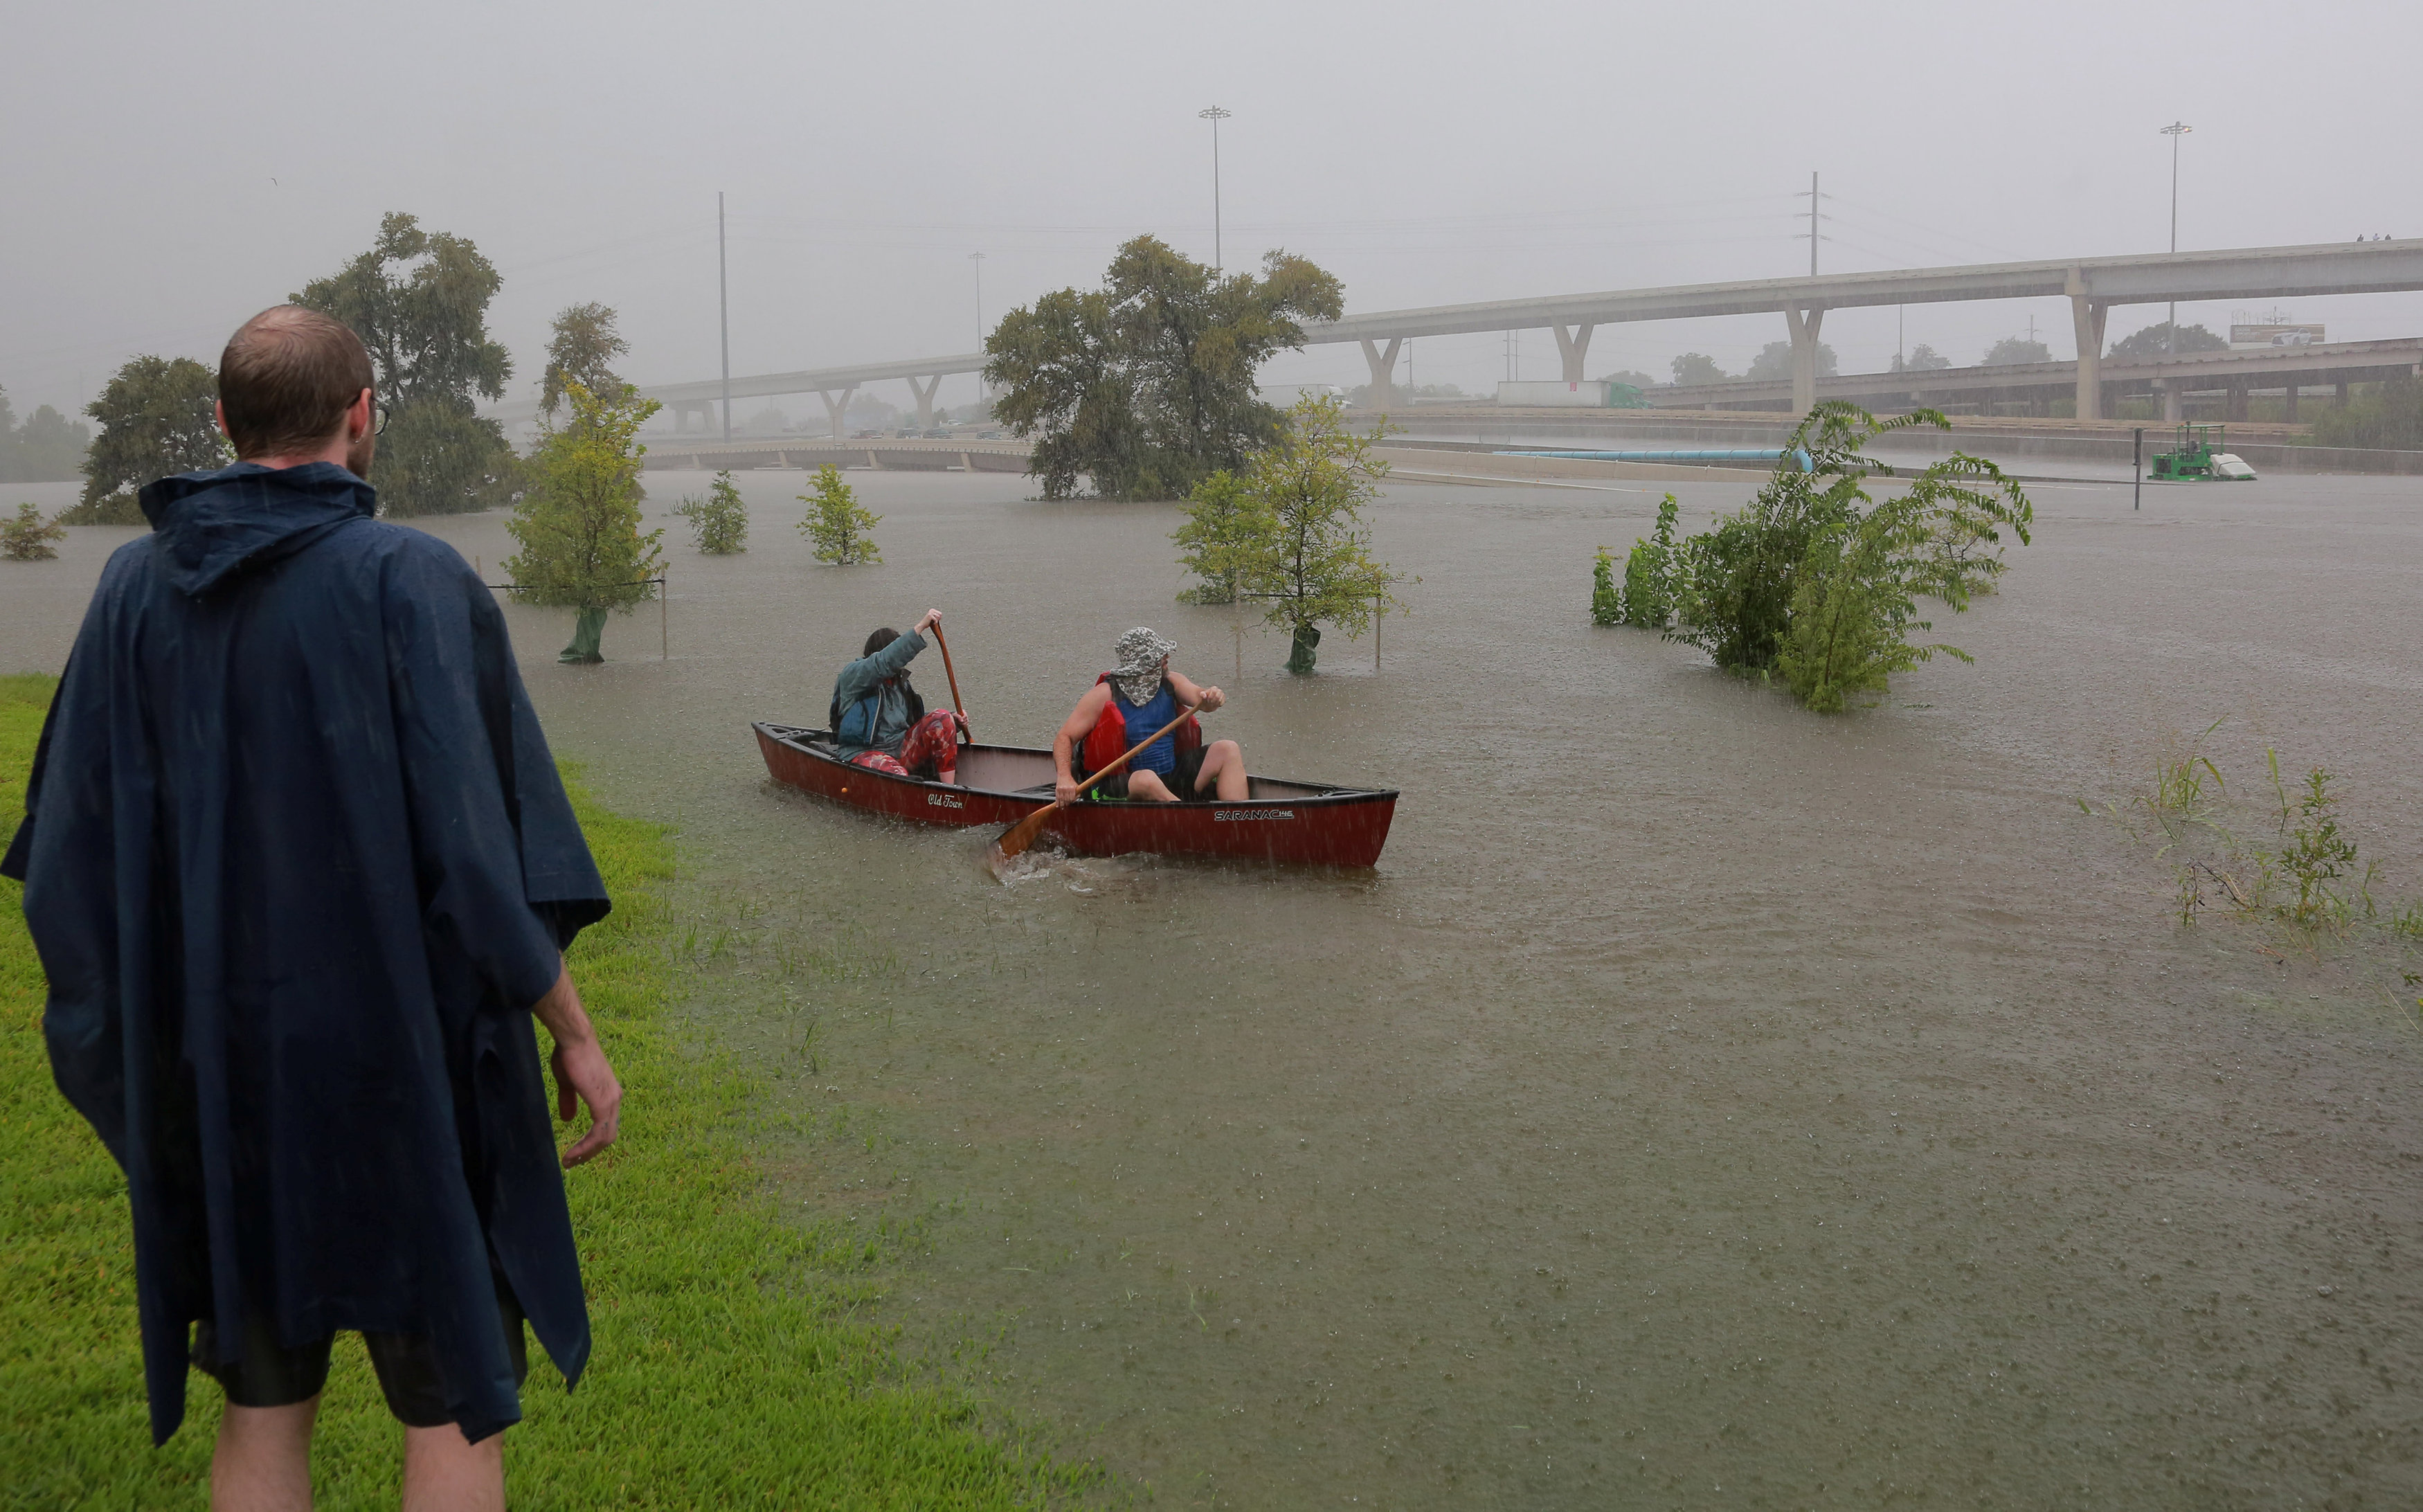 مواطنون يستخدمون القوارب للتنقل وسط مياه الإعصار